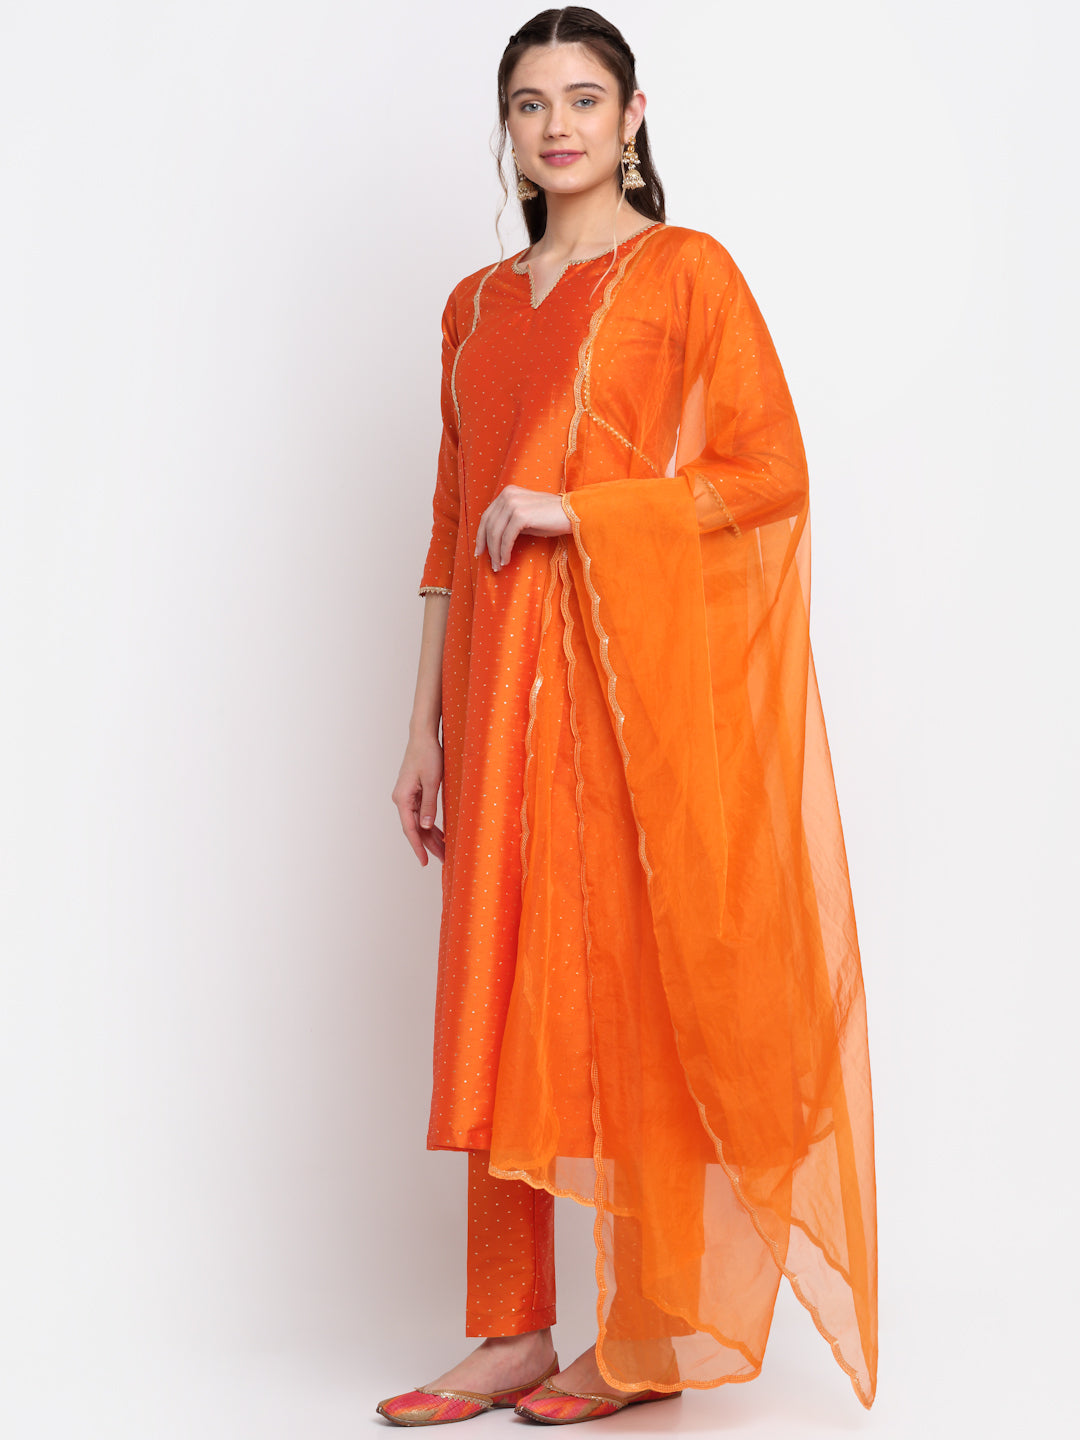 Women's Shining Orange Festive A-Line Kurti With Straight Pants And Scalloped Organza Dupatta - Anokherang